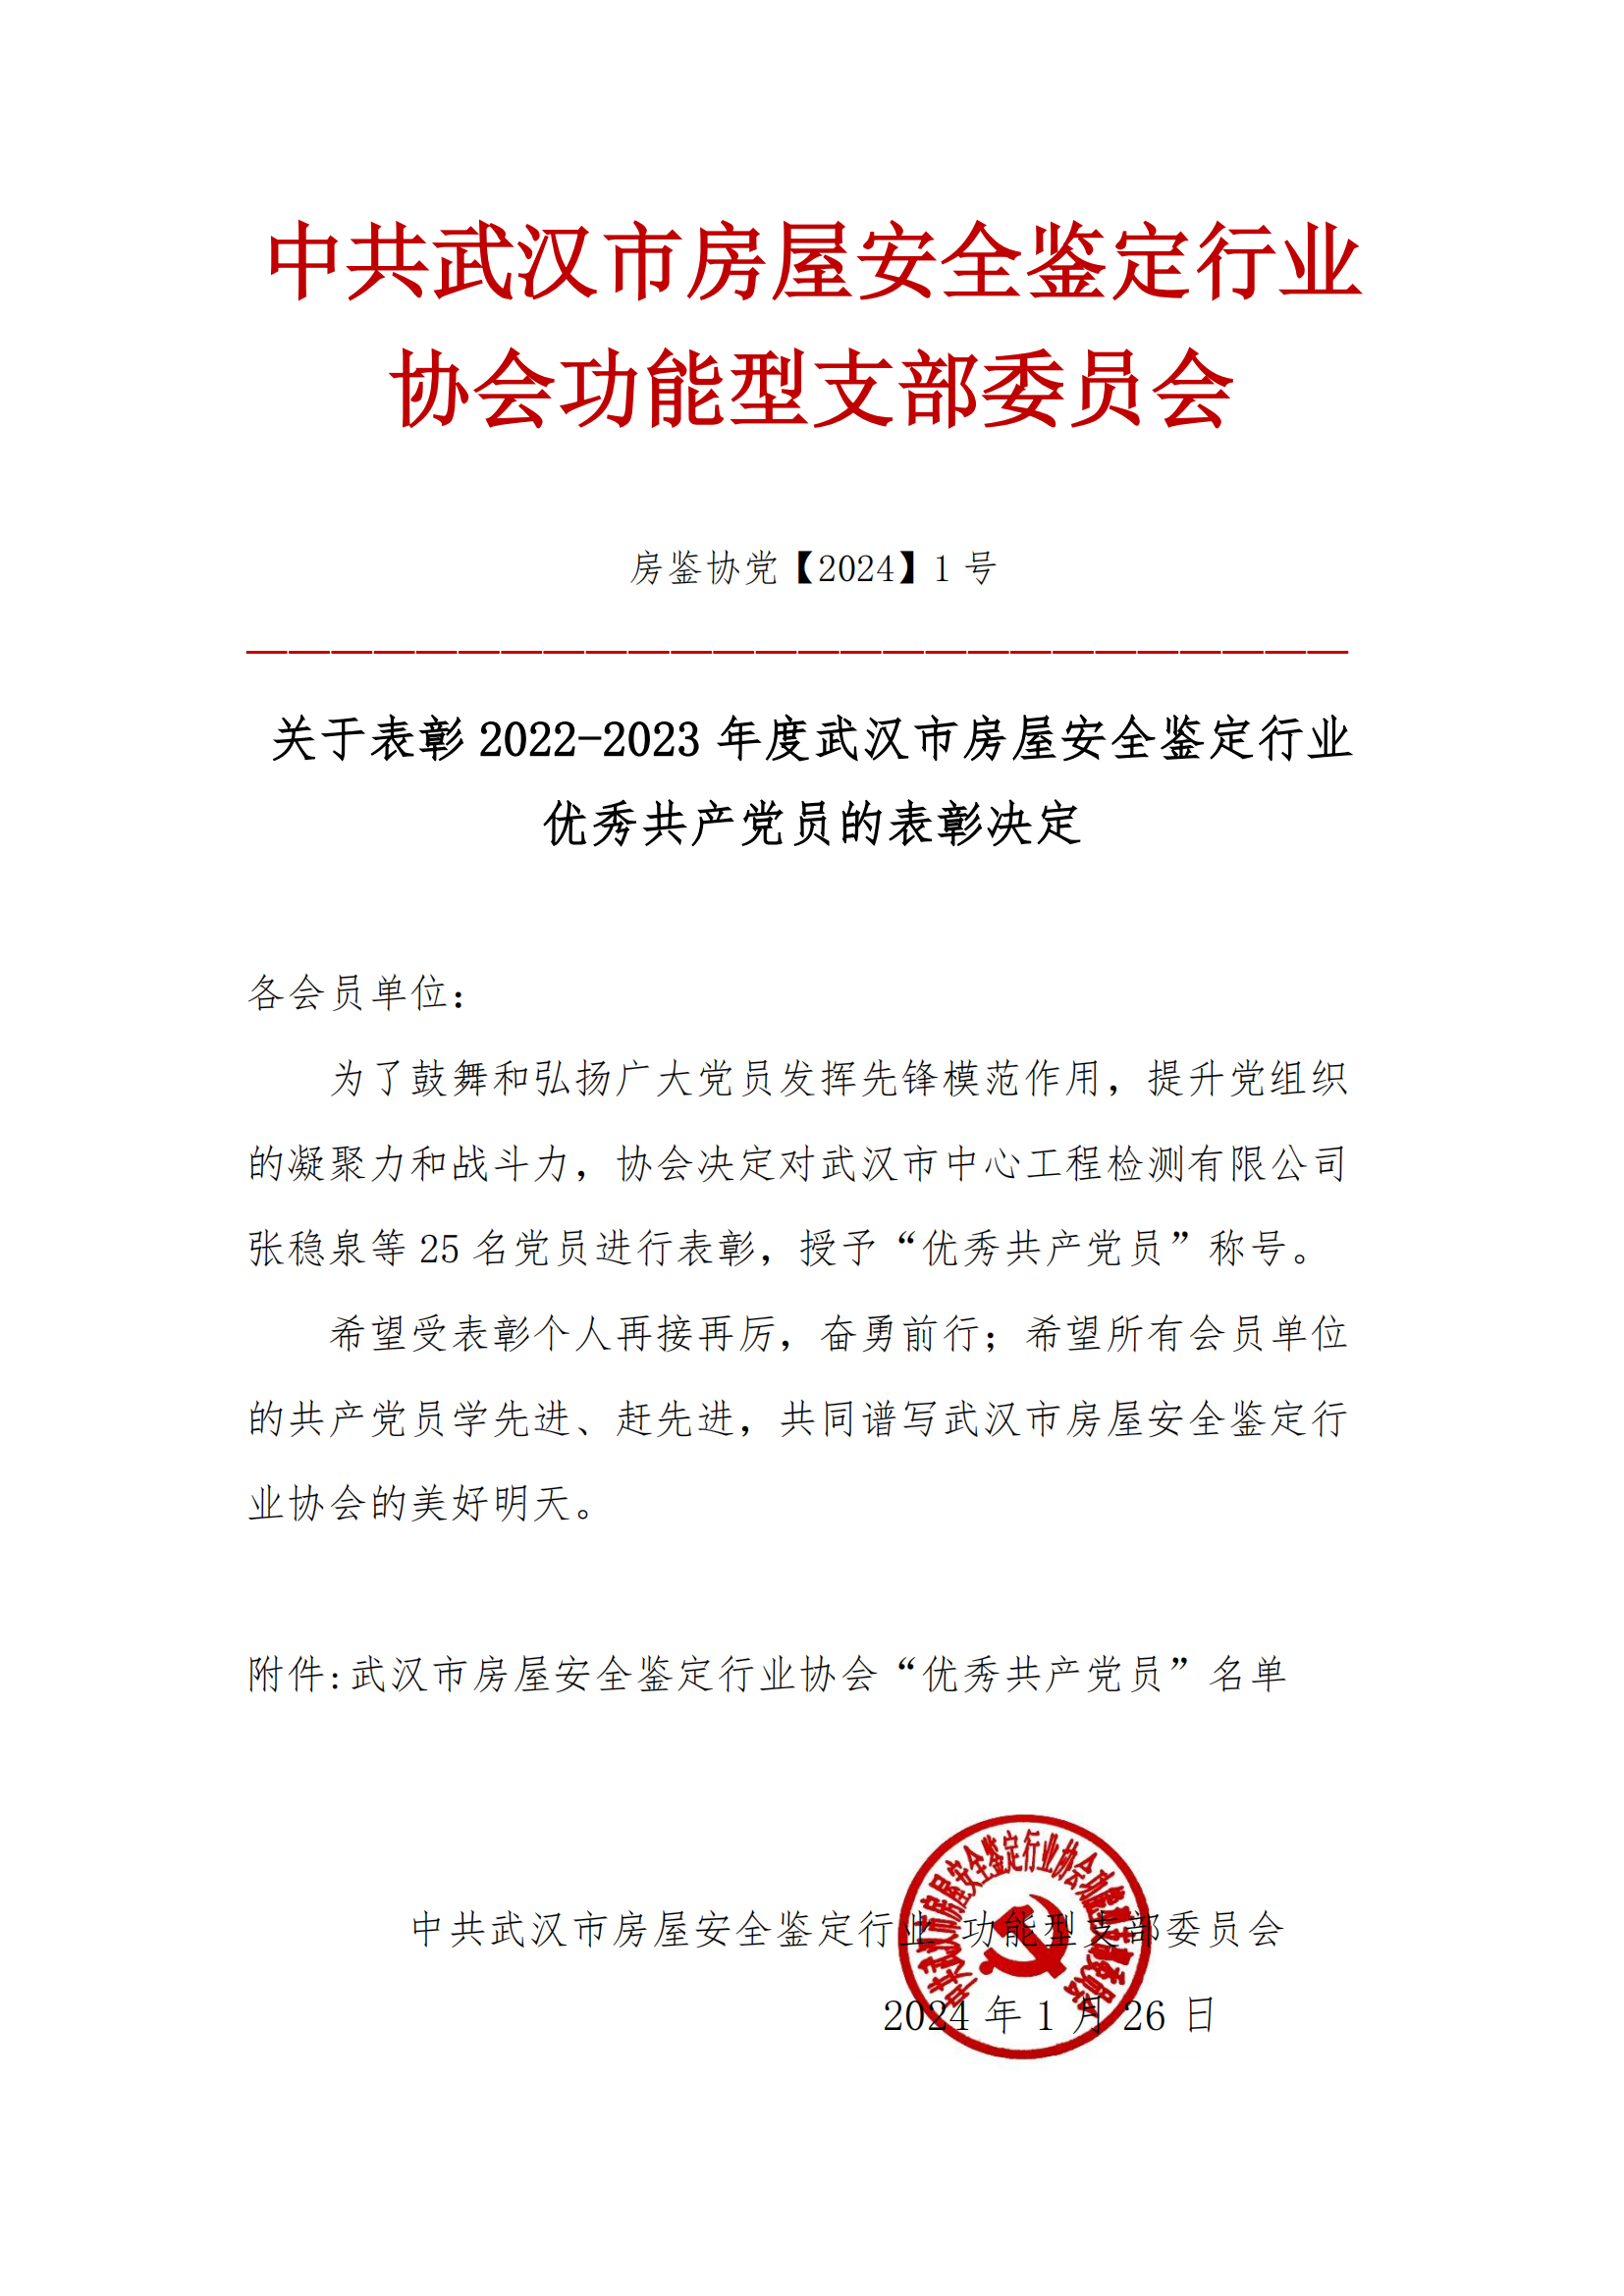 关于表彰2022-2023年度武汉市房屋安全鉴定行业优秀共产党员的表彰决定_00